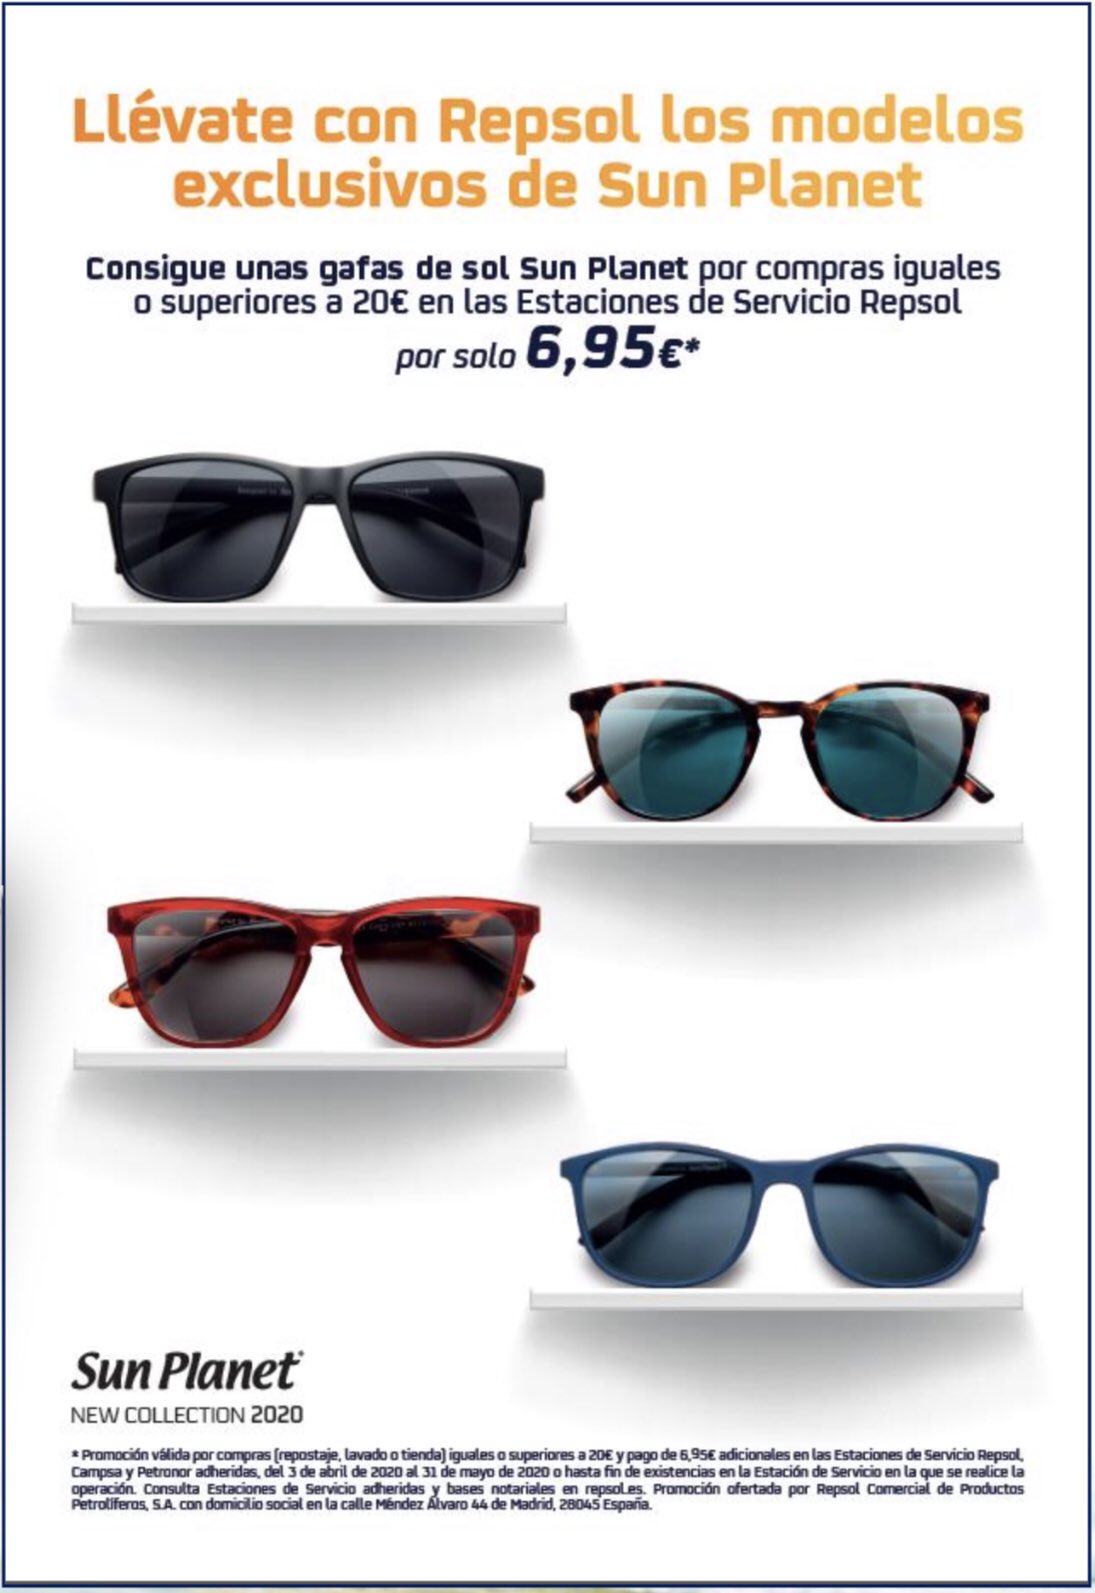 revolución Tableta mostaza 🔴🟠𝙍𝙚𝙥𝙨𝙤𝙡 Salobreña⛽️☕️💦🚗 on Twitter: "Ya tenemos en nuestra  tienda los nuevos modelos de Gafas de Sol 🕶 Sun Planet!!!😎@repsol #repsol  #sunplanet #salobreña https://t.co/WzS3UIQQUT" / Twitter